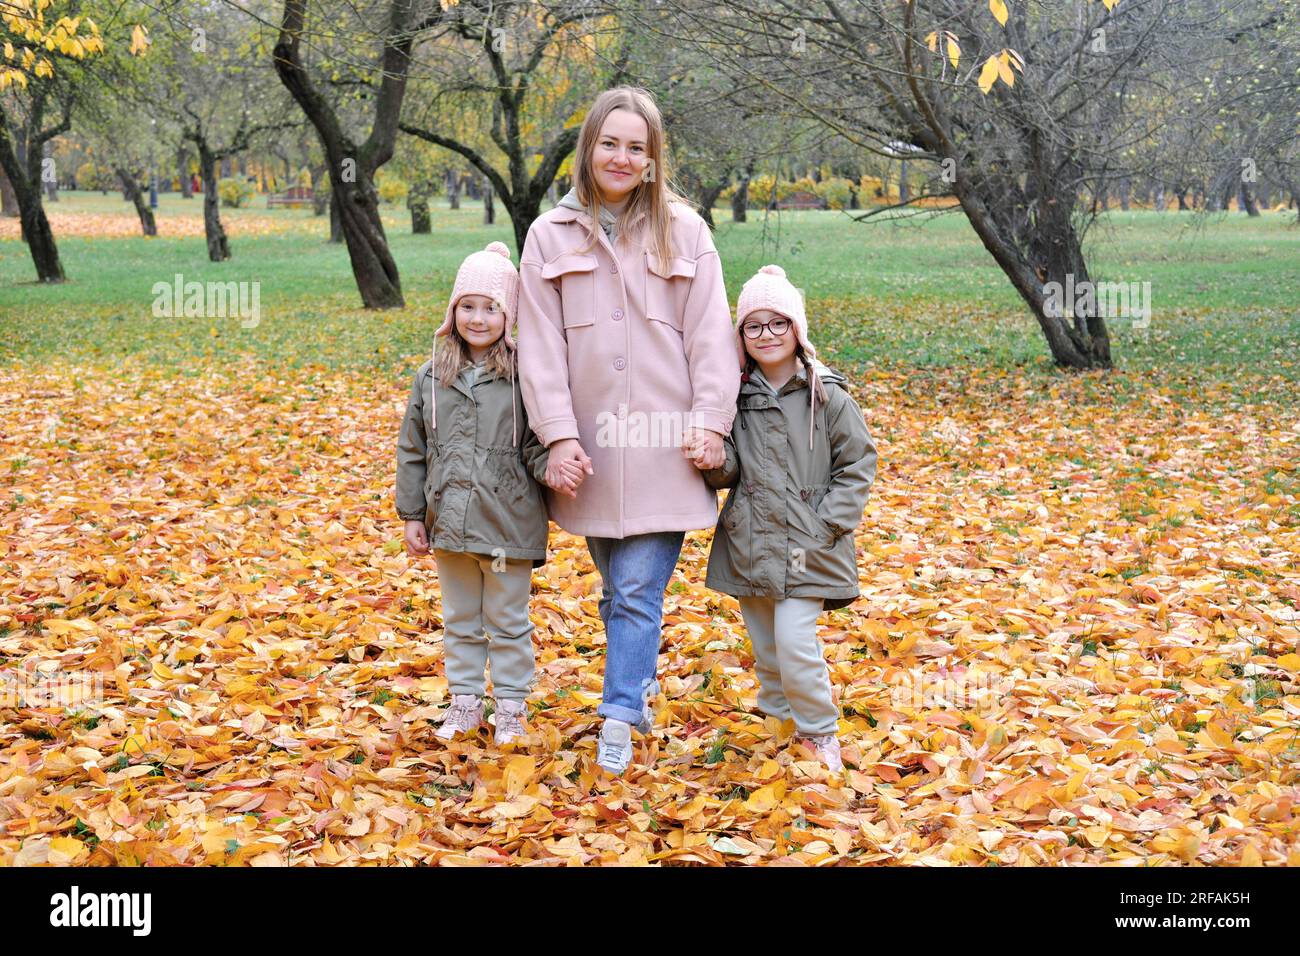 Im Herbstpark spielt die kaukasische Familie, die Mutter begrüßt zwei Zwillinge und lächelt, am aktiven Wochenende im Freien. Horizontales Foto Stockfoto